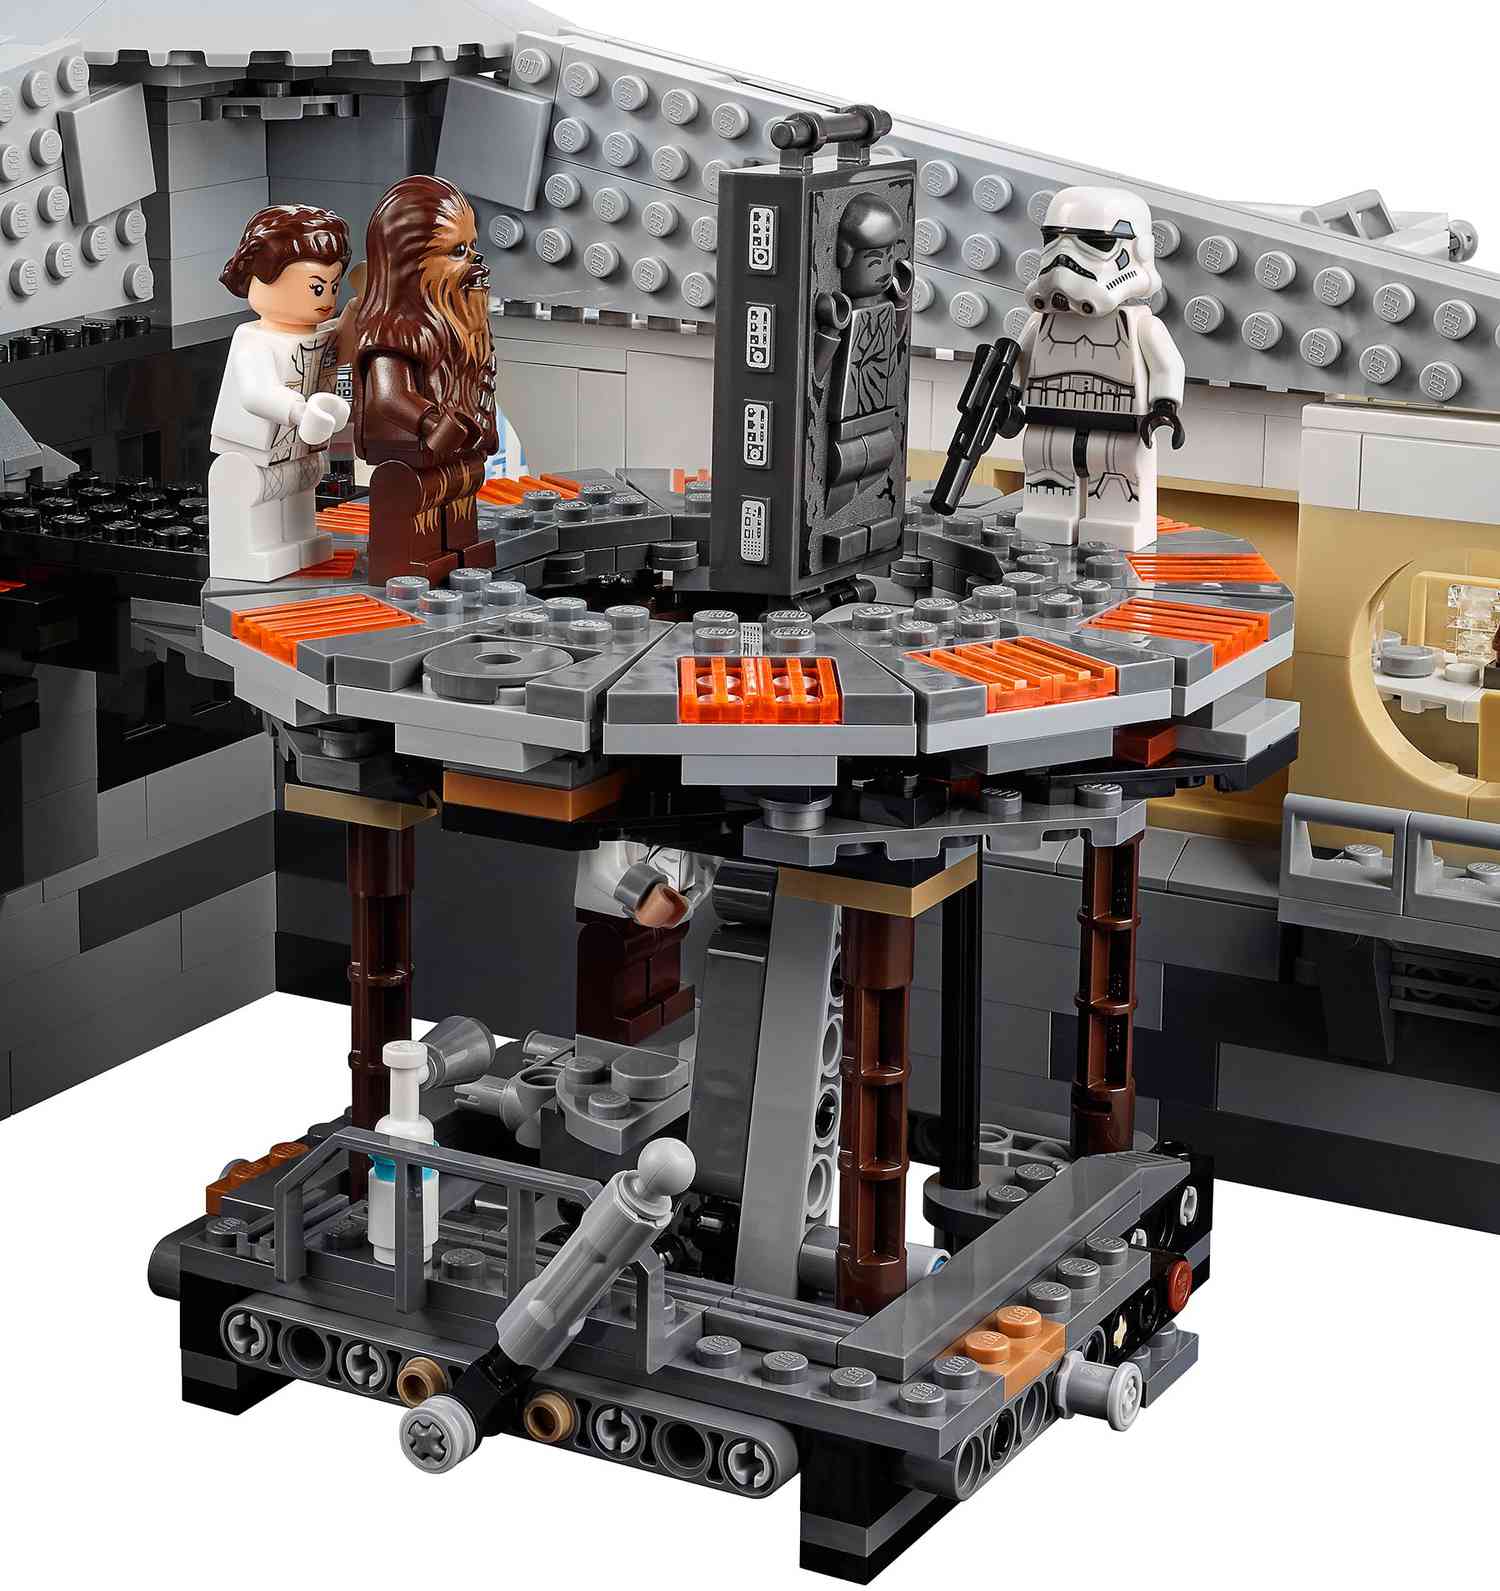 LEGO Star Wars' Betrayal at Cloud City